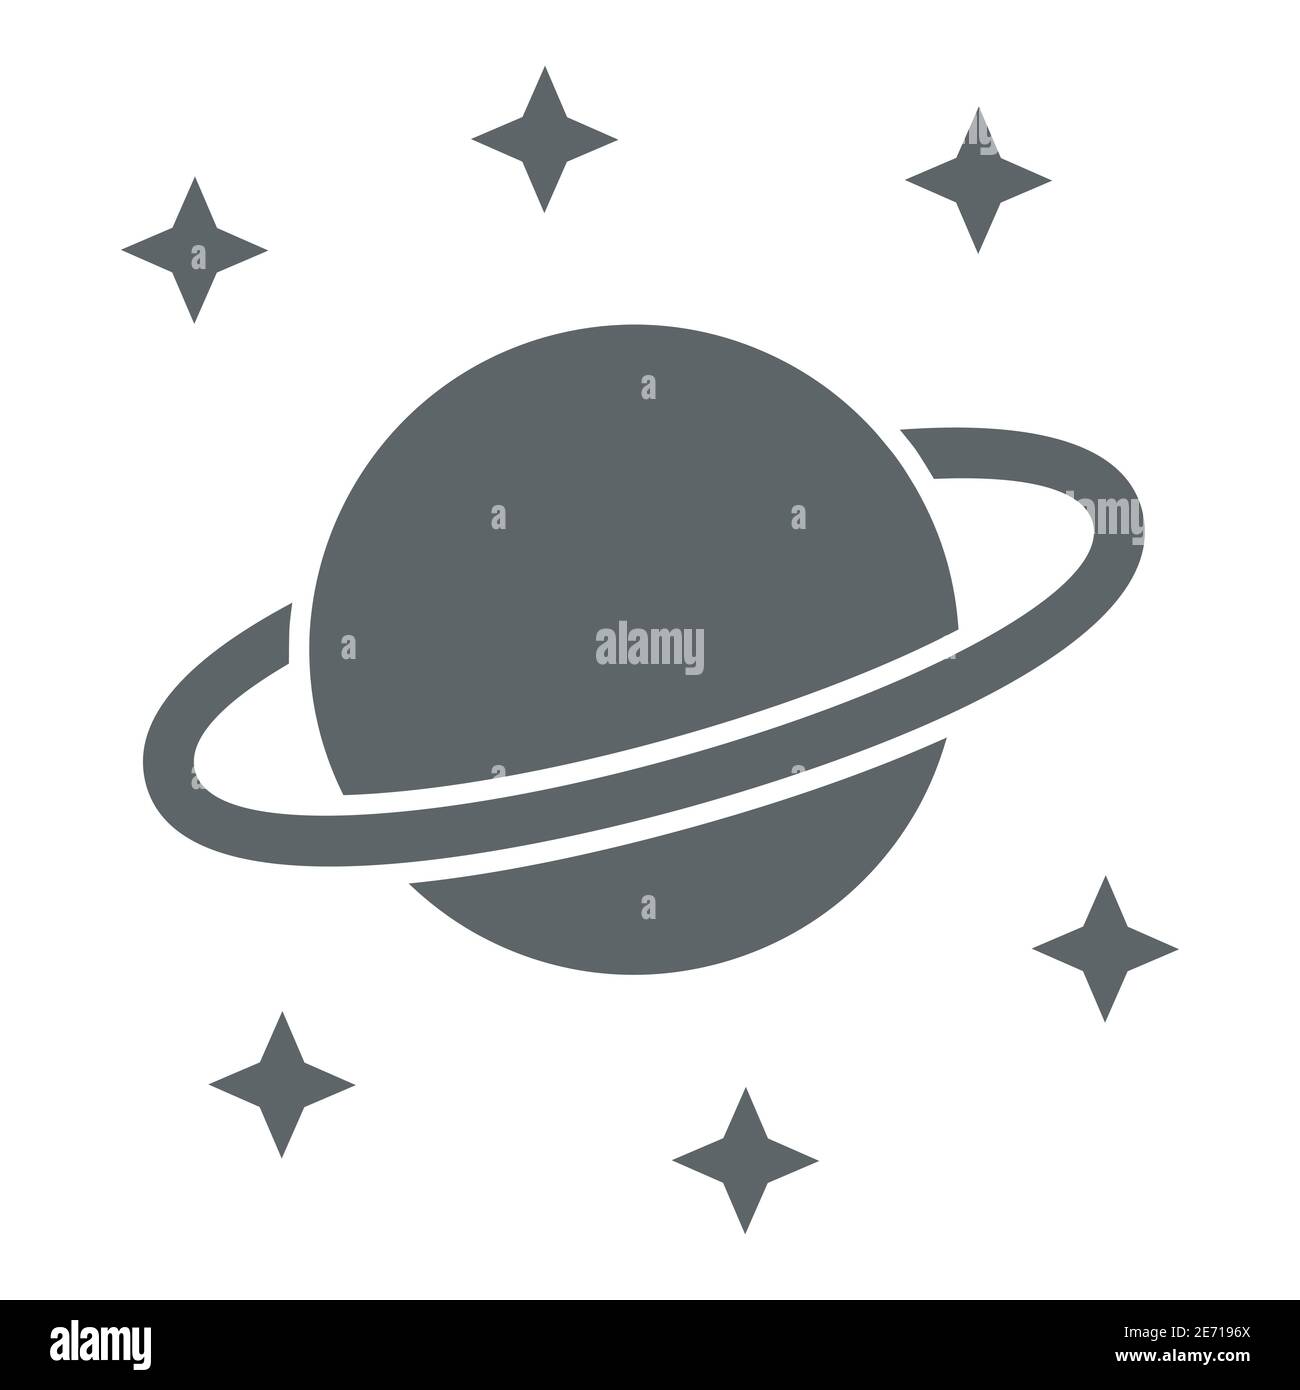 Planet Saturn icona solida, concetto di spazio, pianeta e stelle segno su sfondo bianco, Saturno con l'icona del sistema planetario ad anello in stile glifo per dispositivi mobili Illustrazione Vettoriale